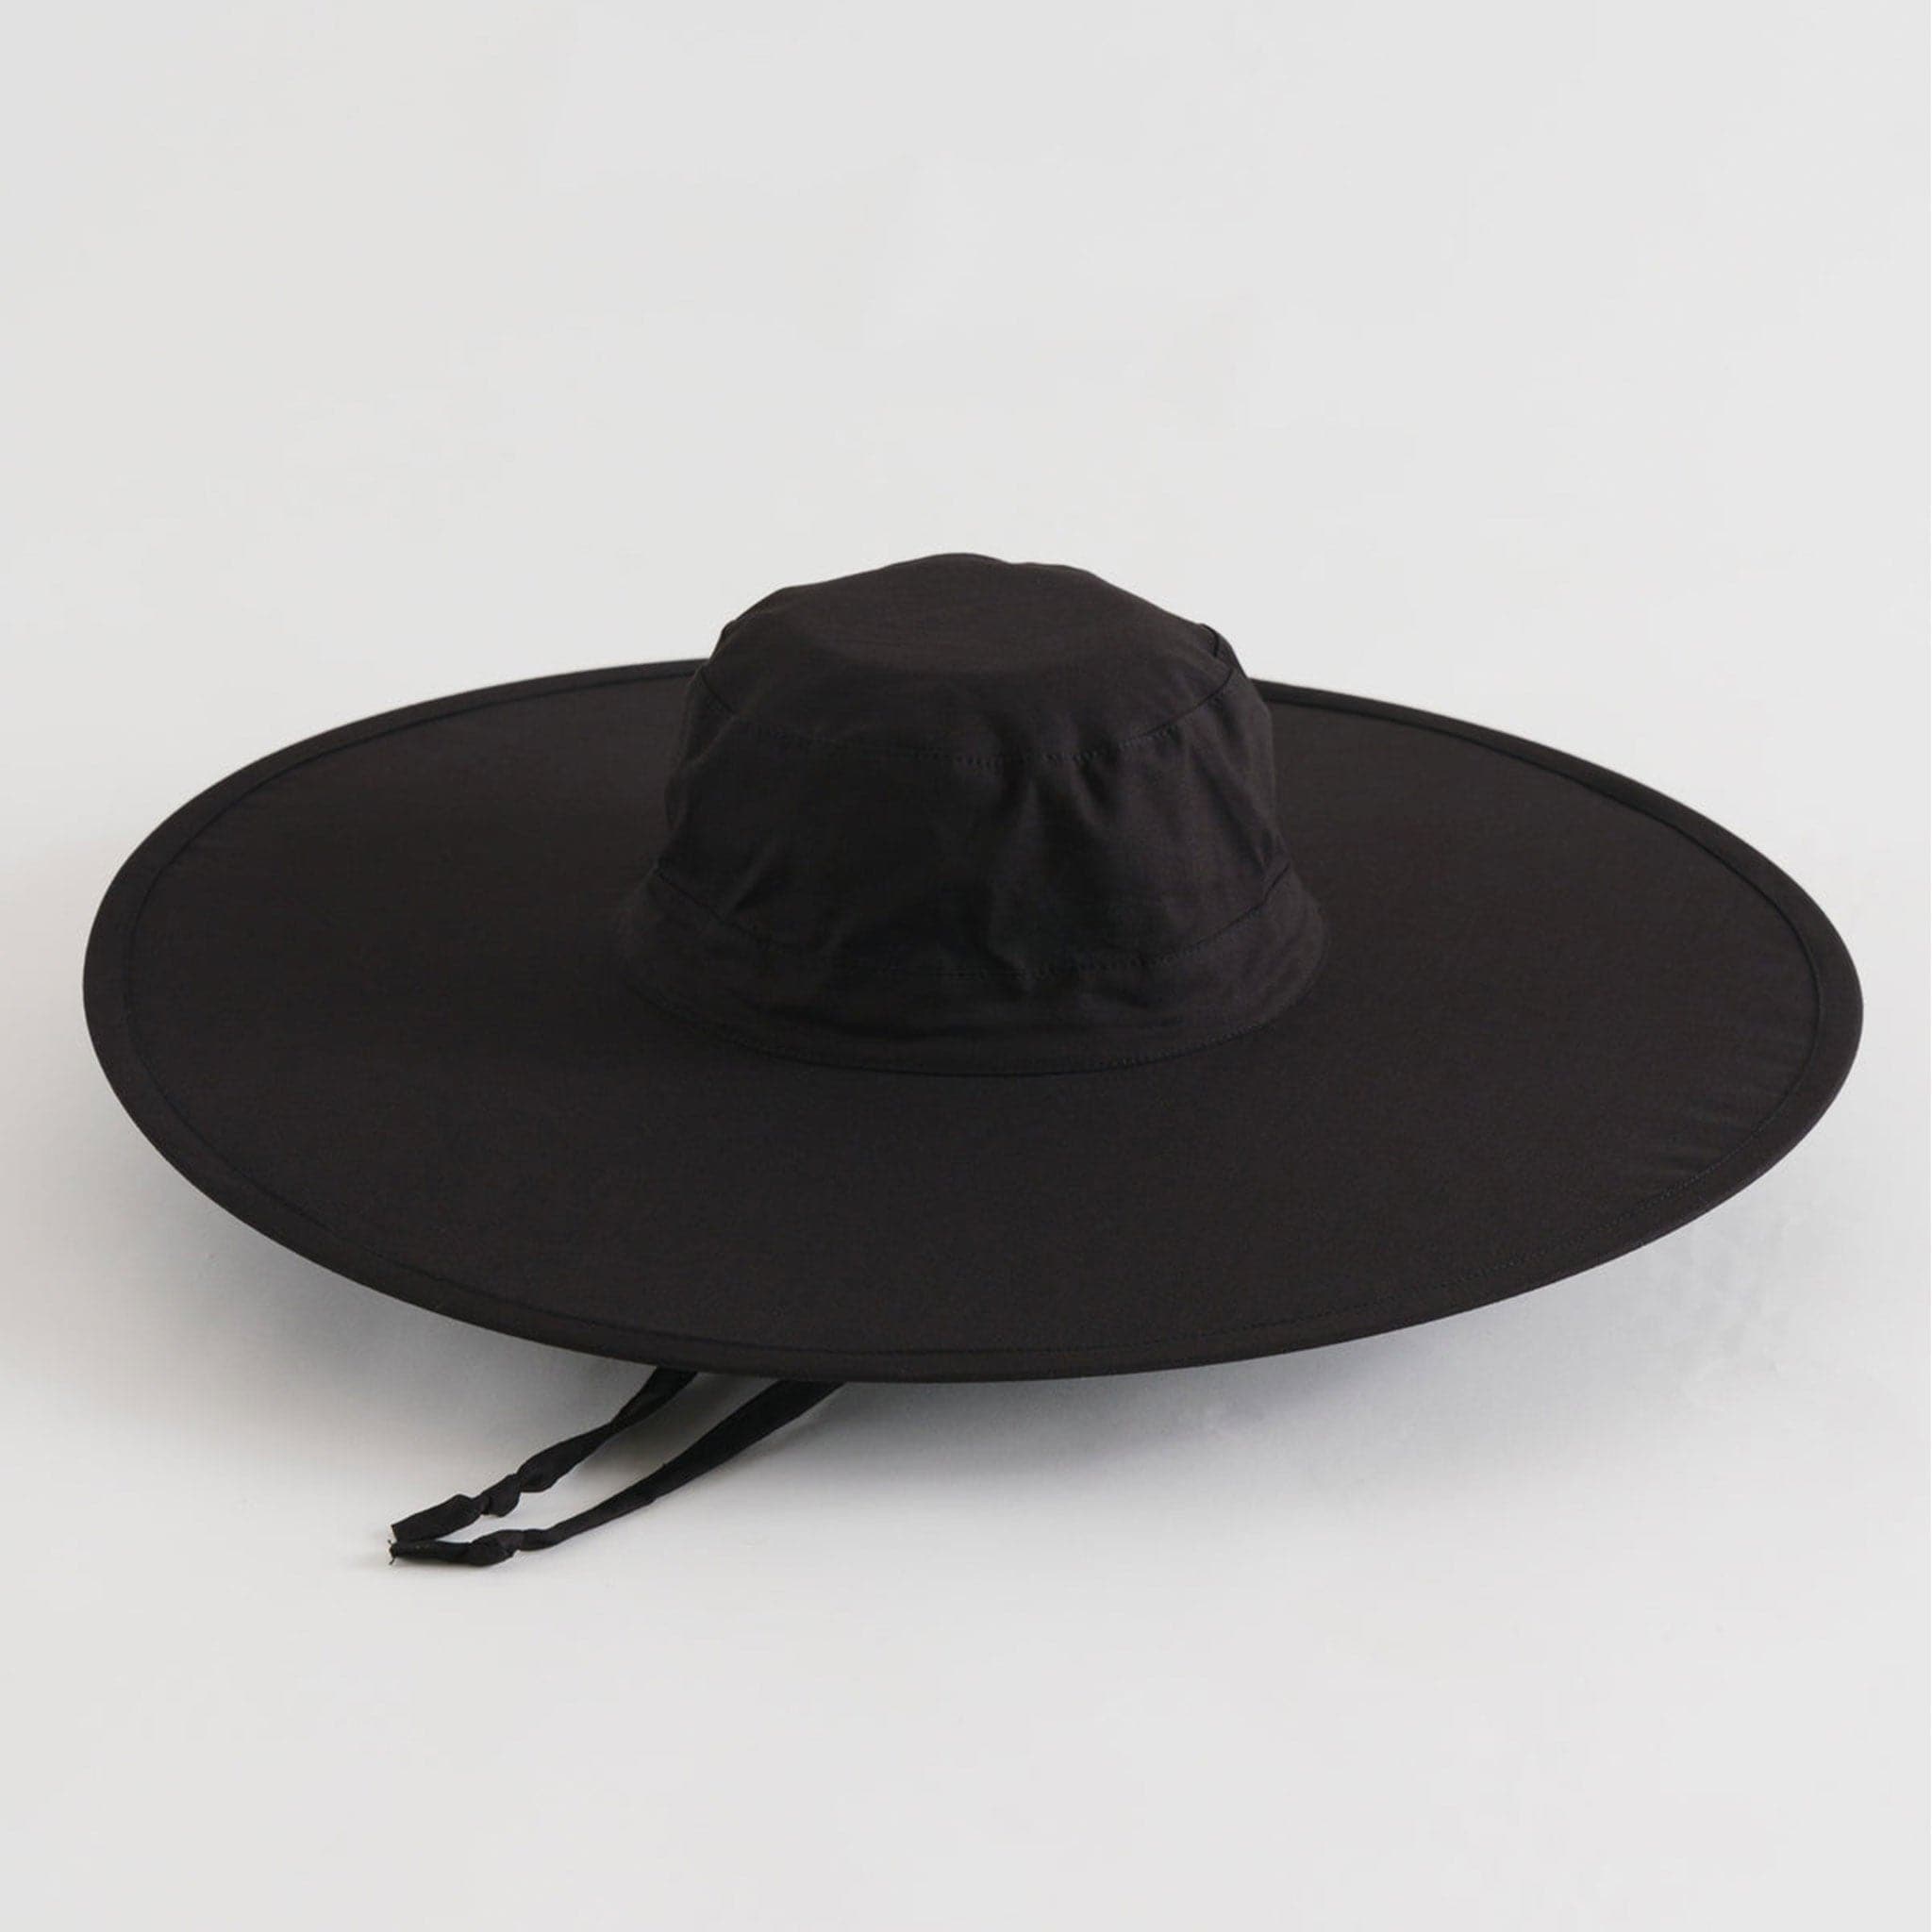 A black wide brim nylon hat with a neck strap.